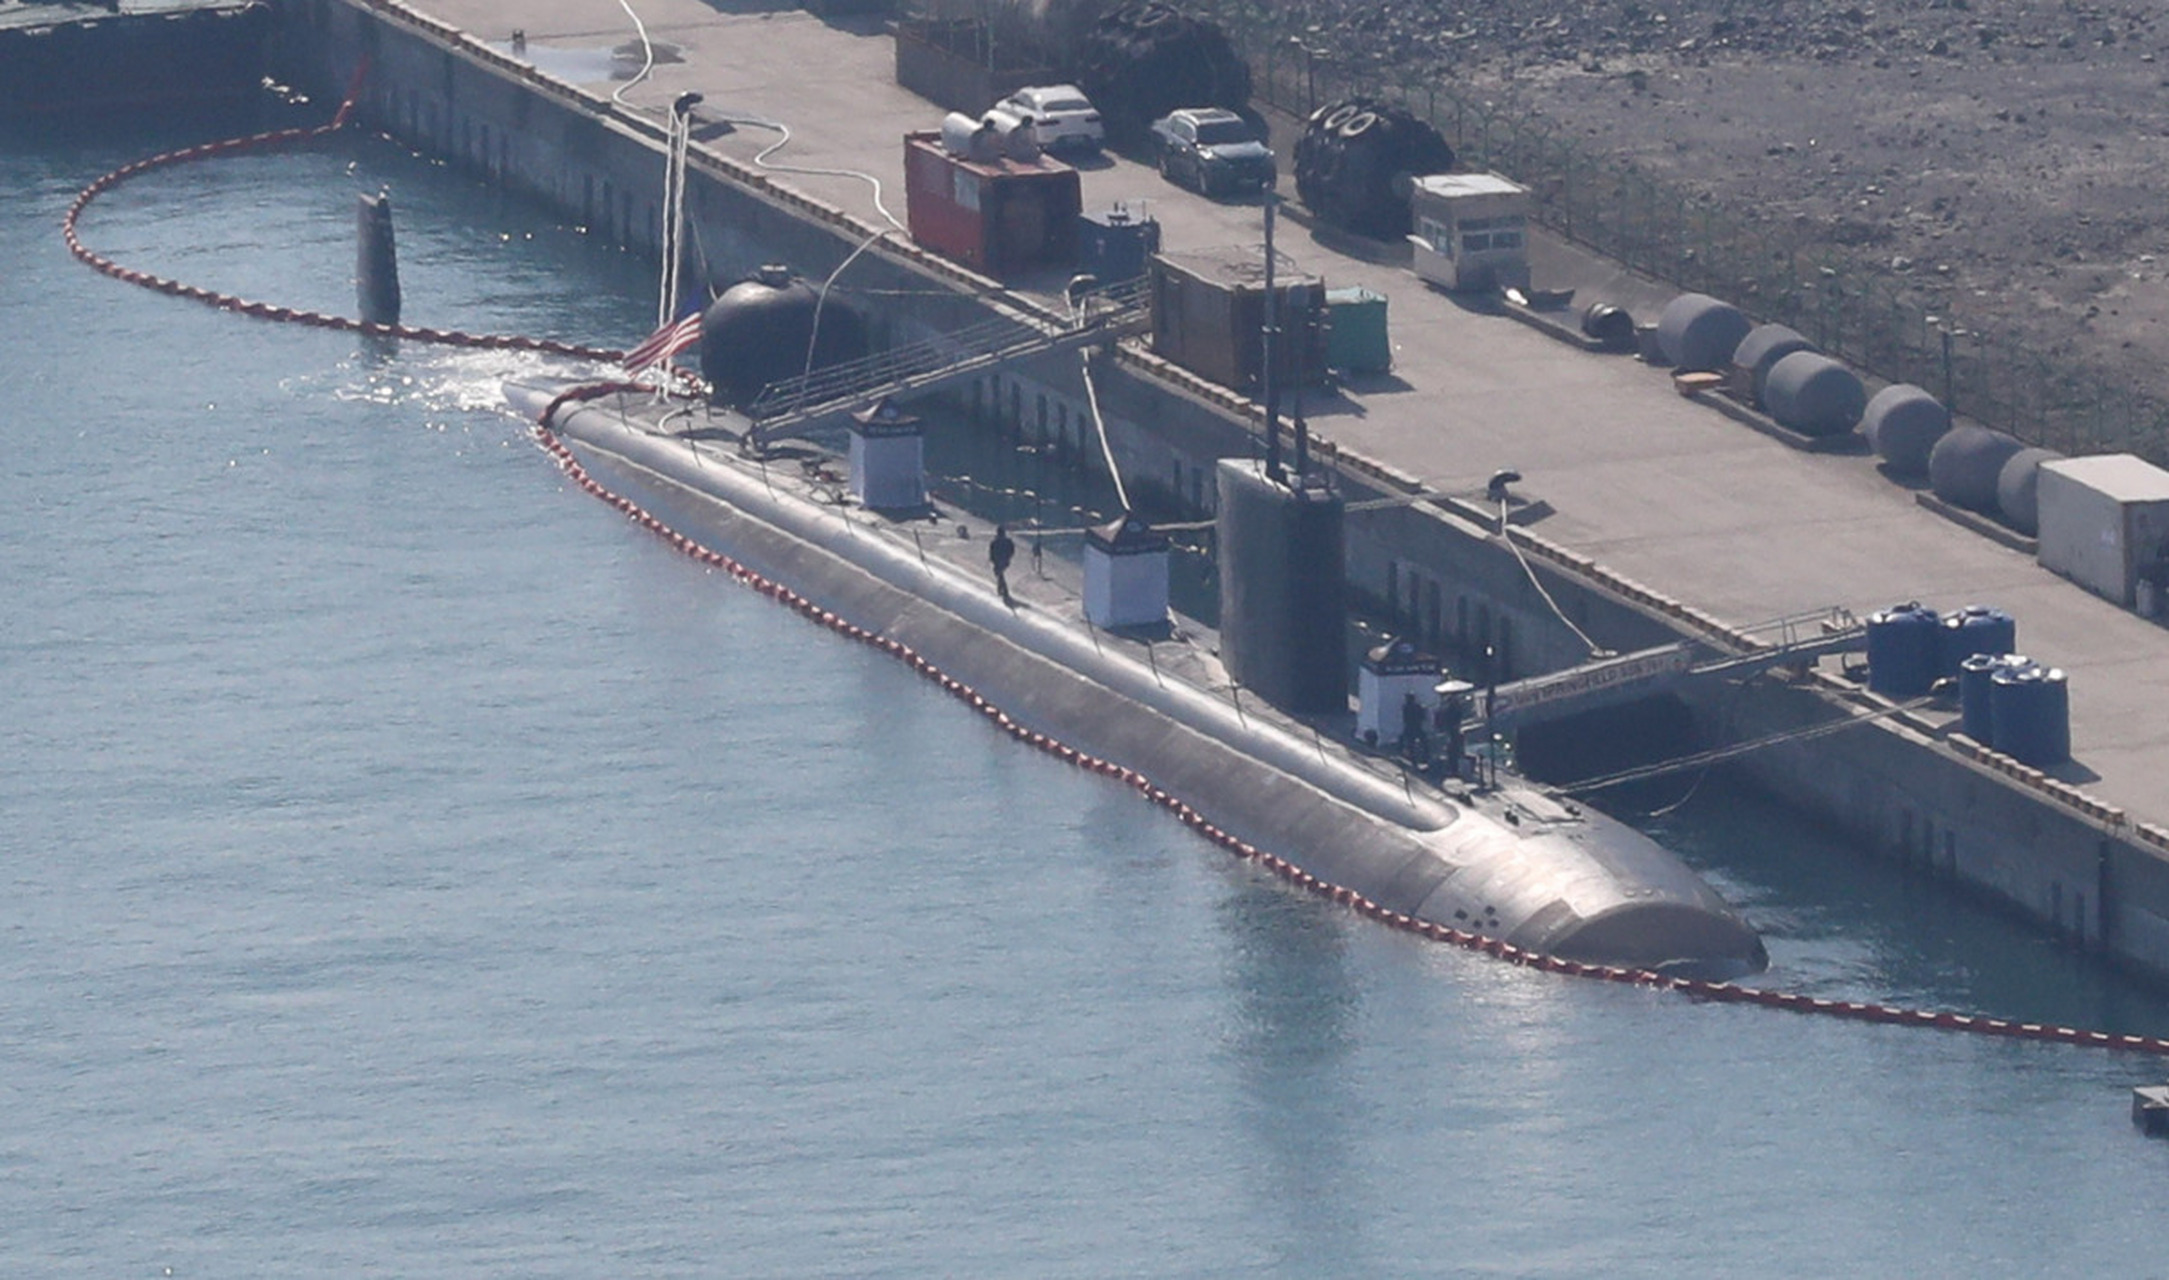 根据路透社和美联社消息,美国的密西根号核动力潜艇携带大约150枚